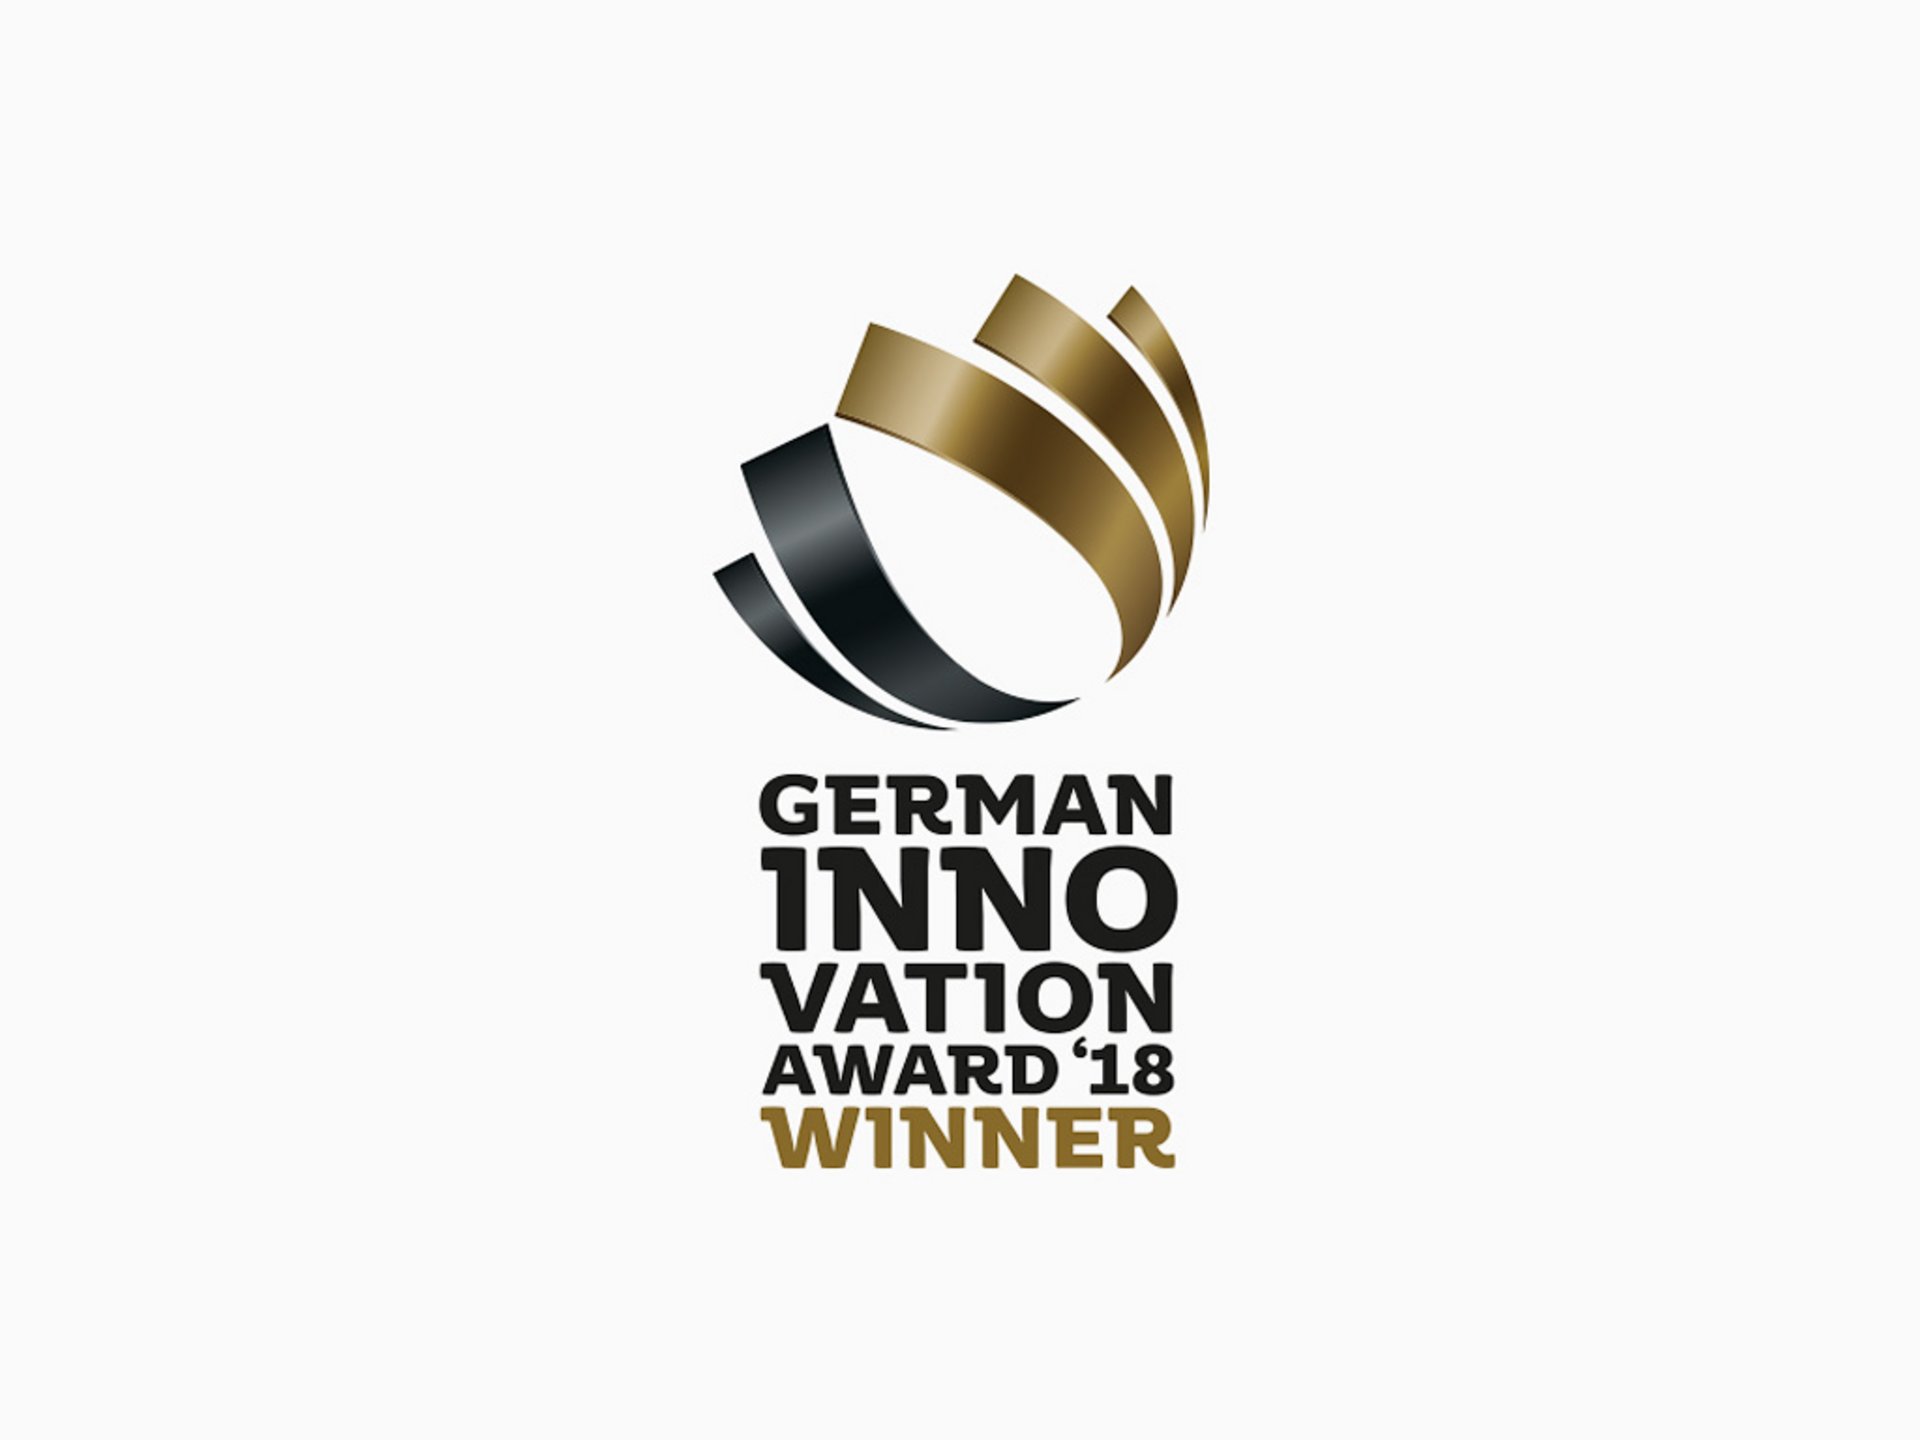 Bild: German Innovation Award